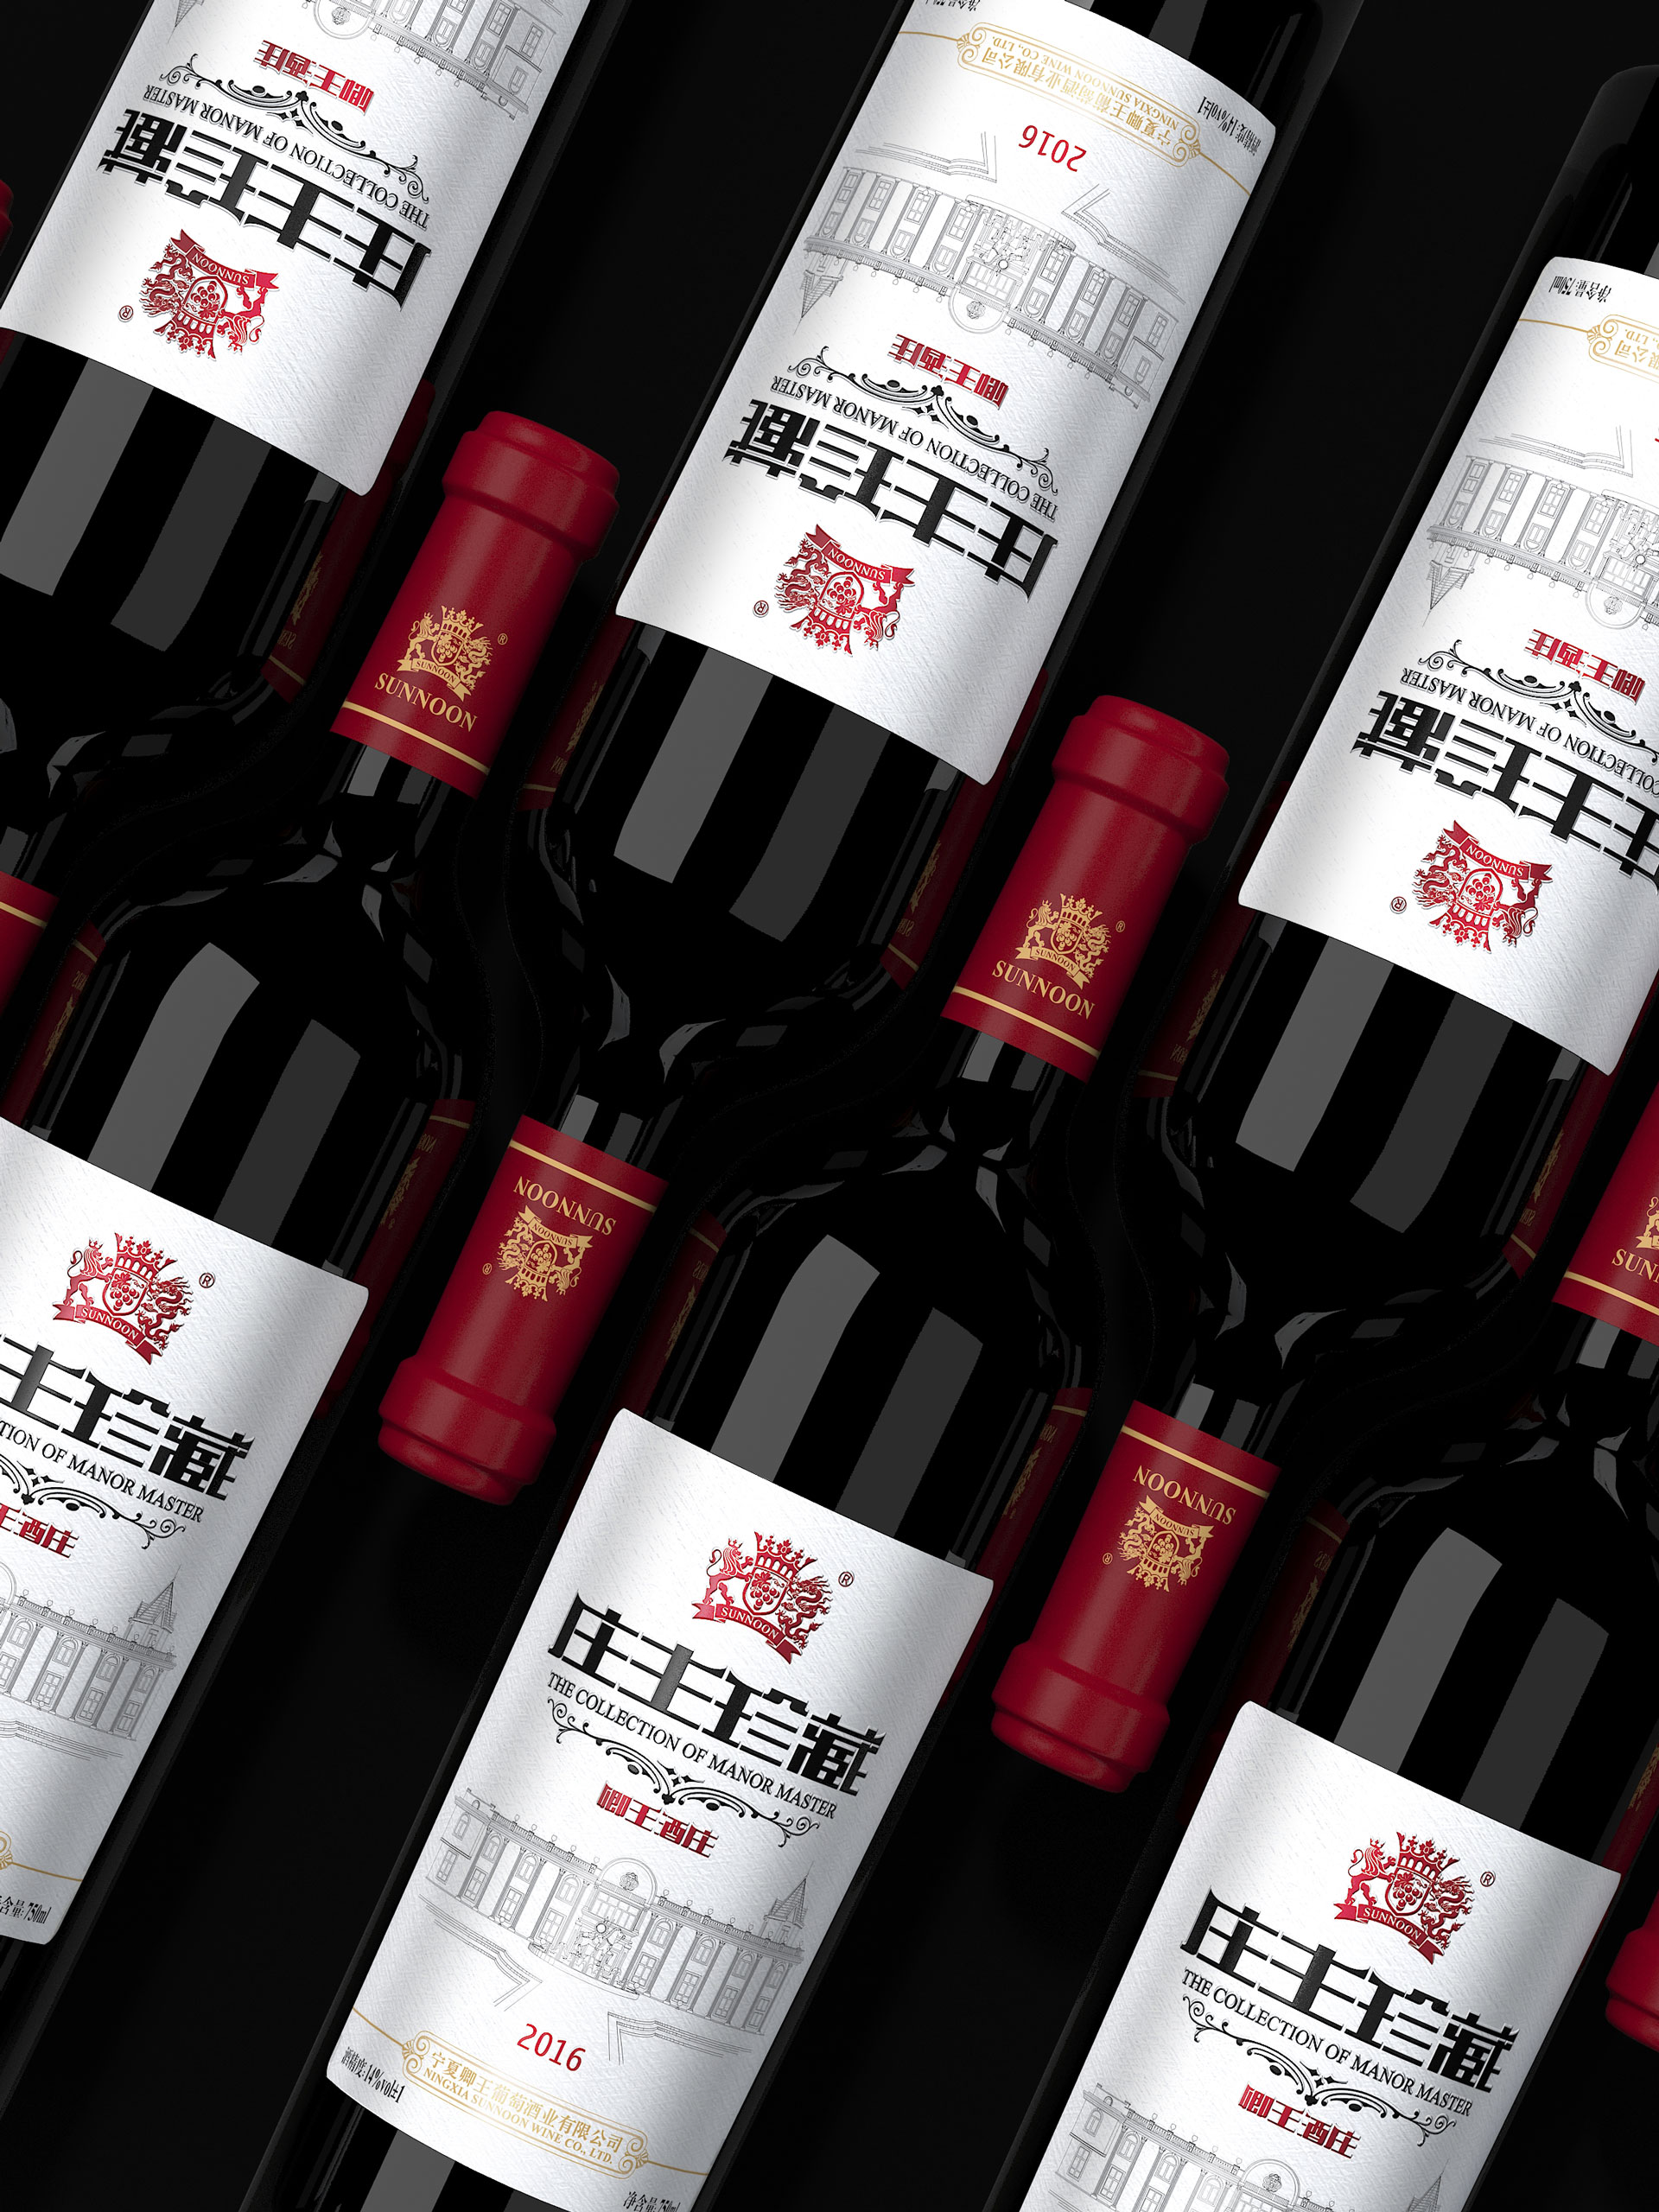 葡萄酒包装设计，红酒礼盒设计公司，葡萄酒包装设计公司，上海包装设计公司，进口红酒包装策划设计